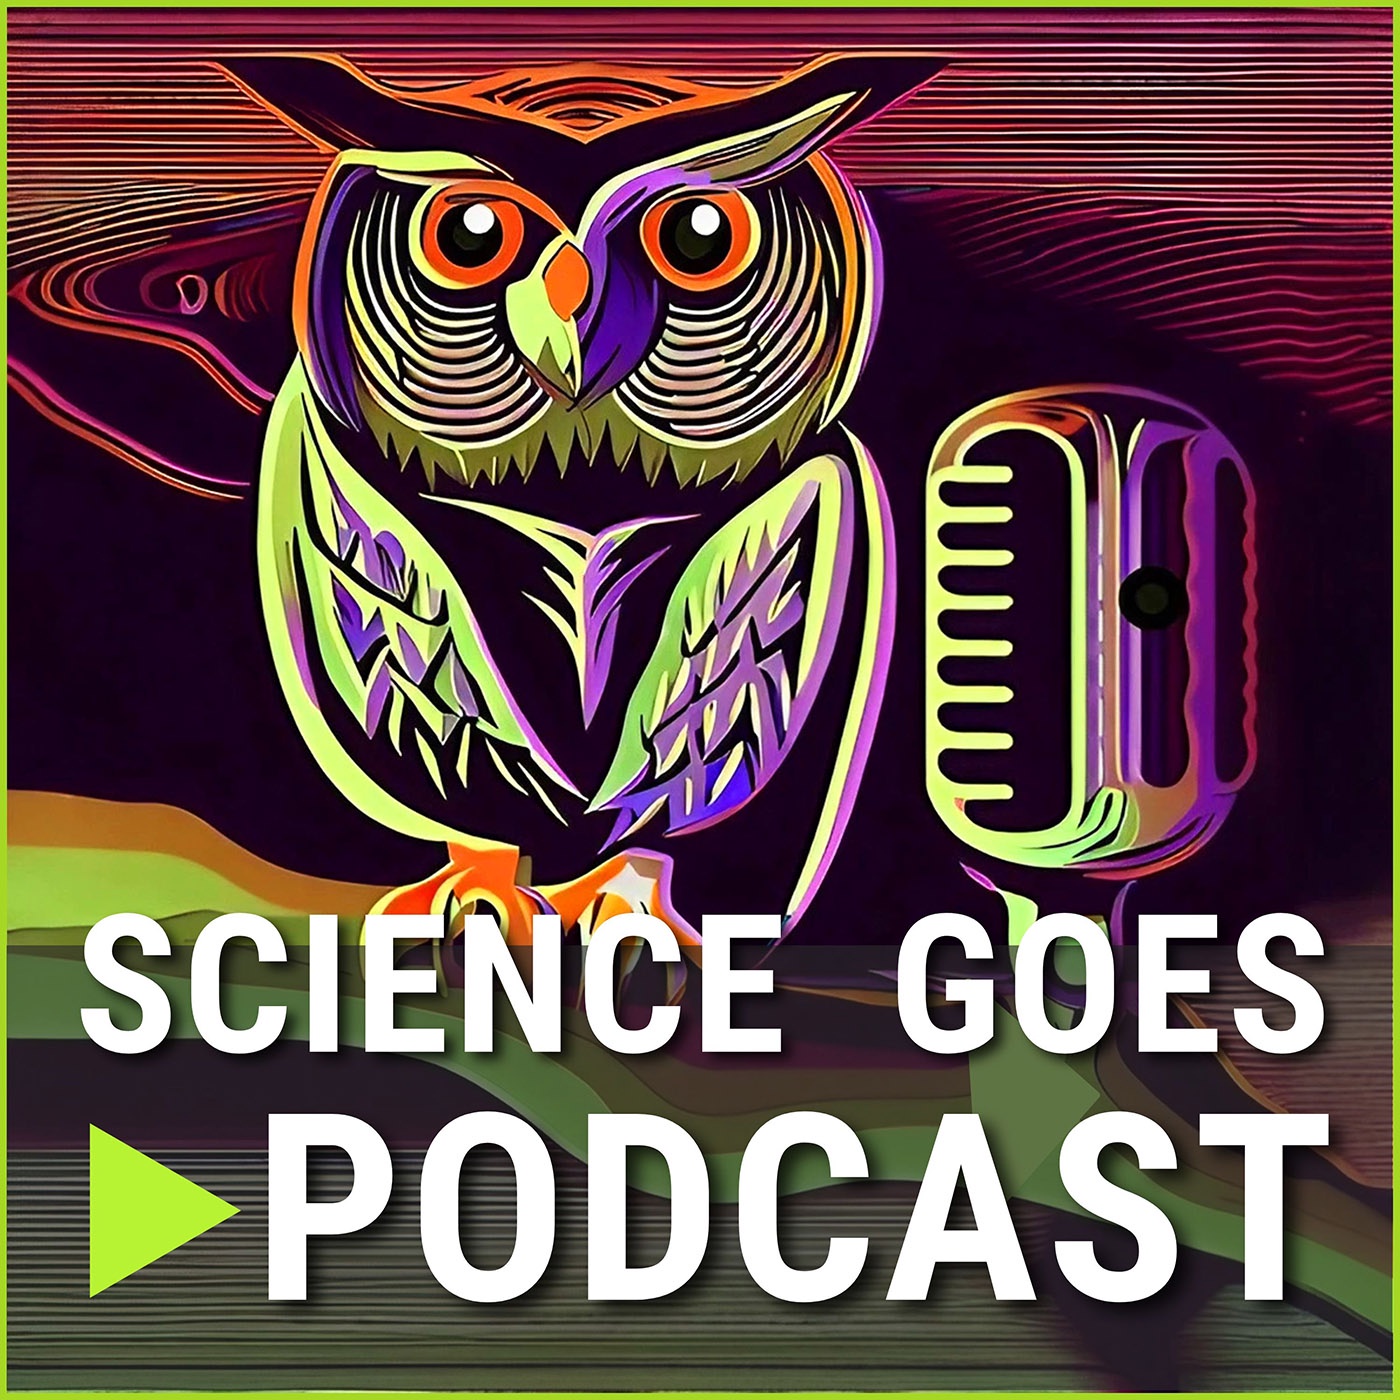 Netzwerke für Hosts von Wissenschaftspodcasts